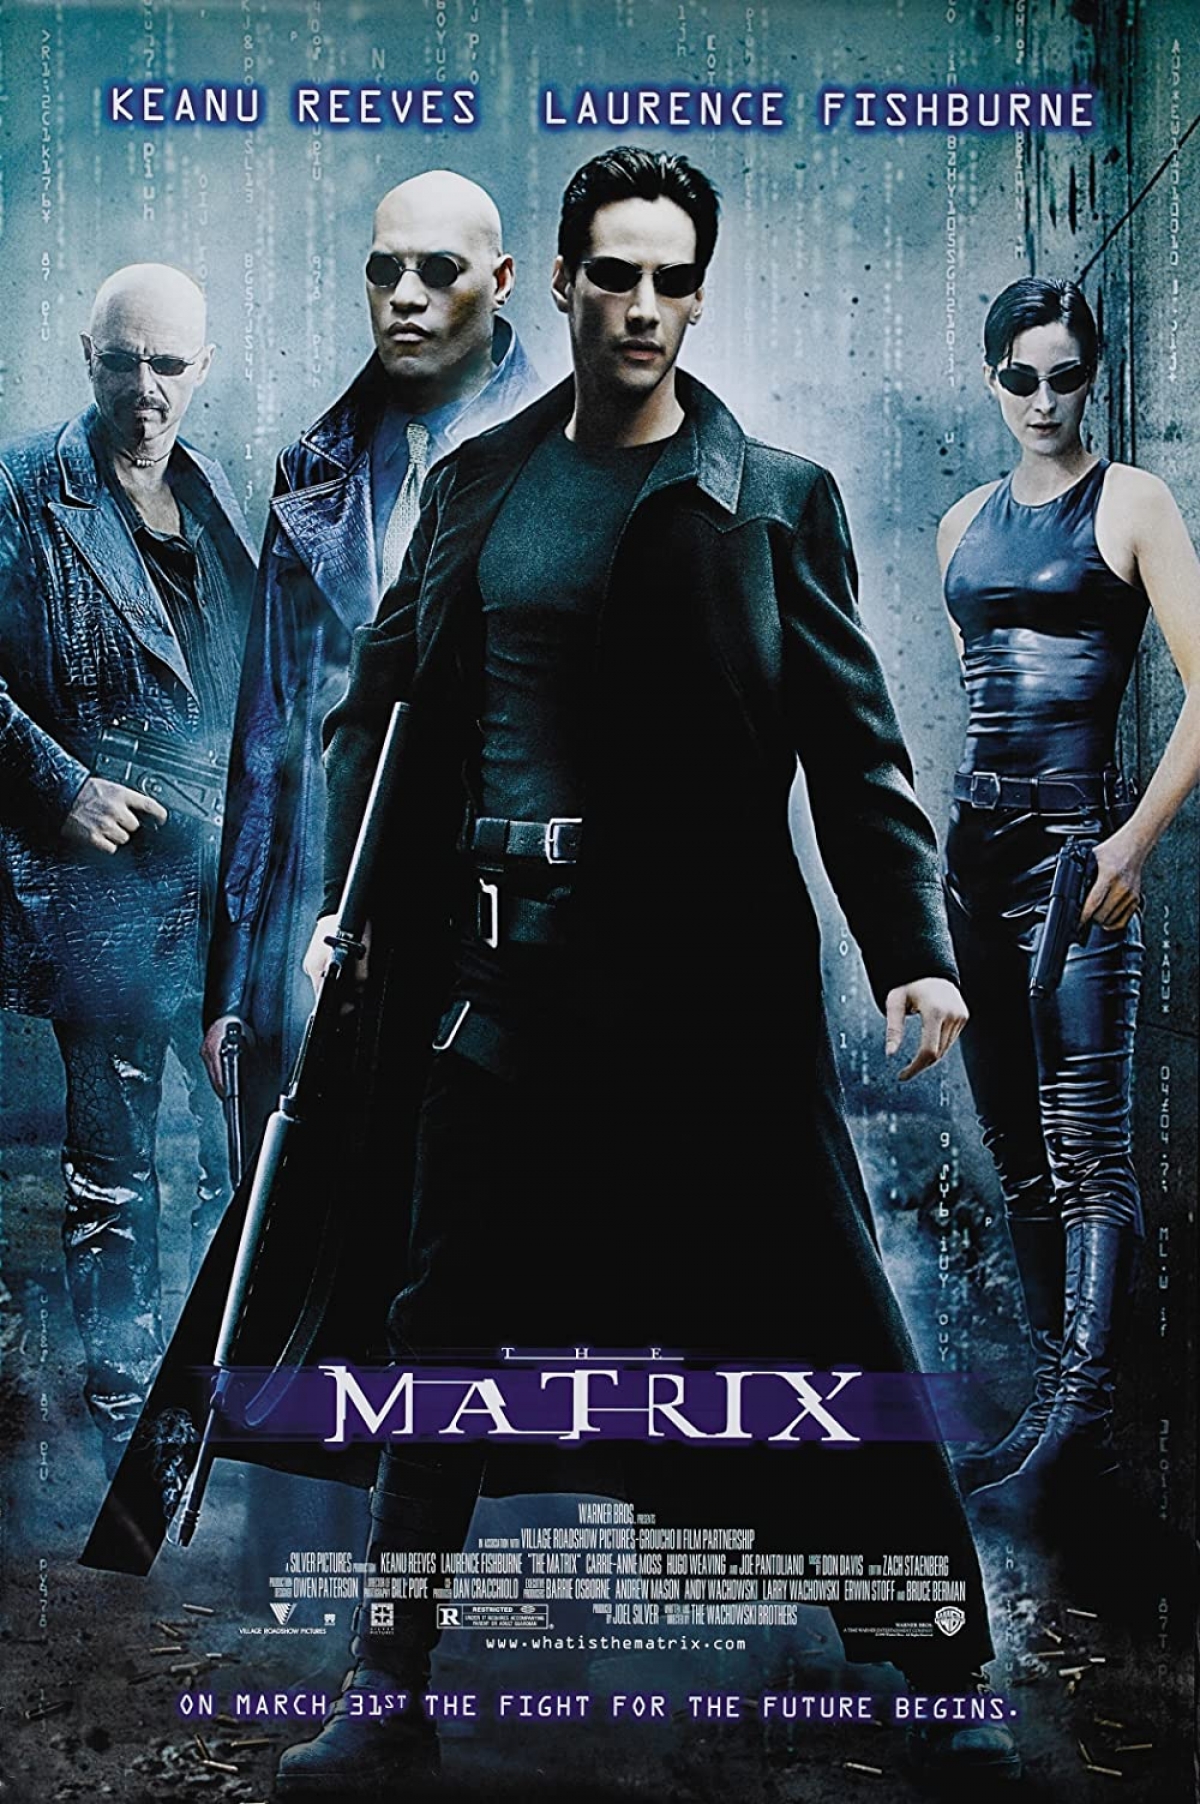 The Matrix được xem là 1 trong những bộ phim kinh điển của Hollywood